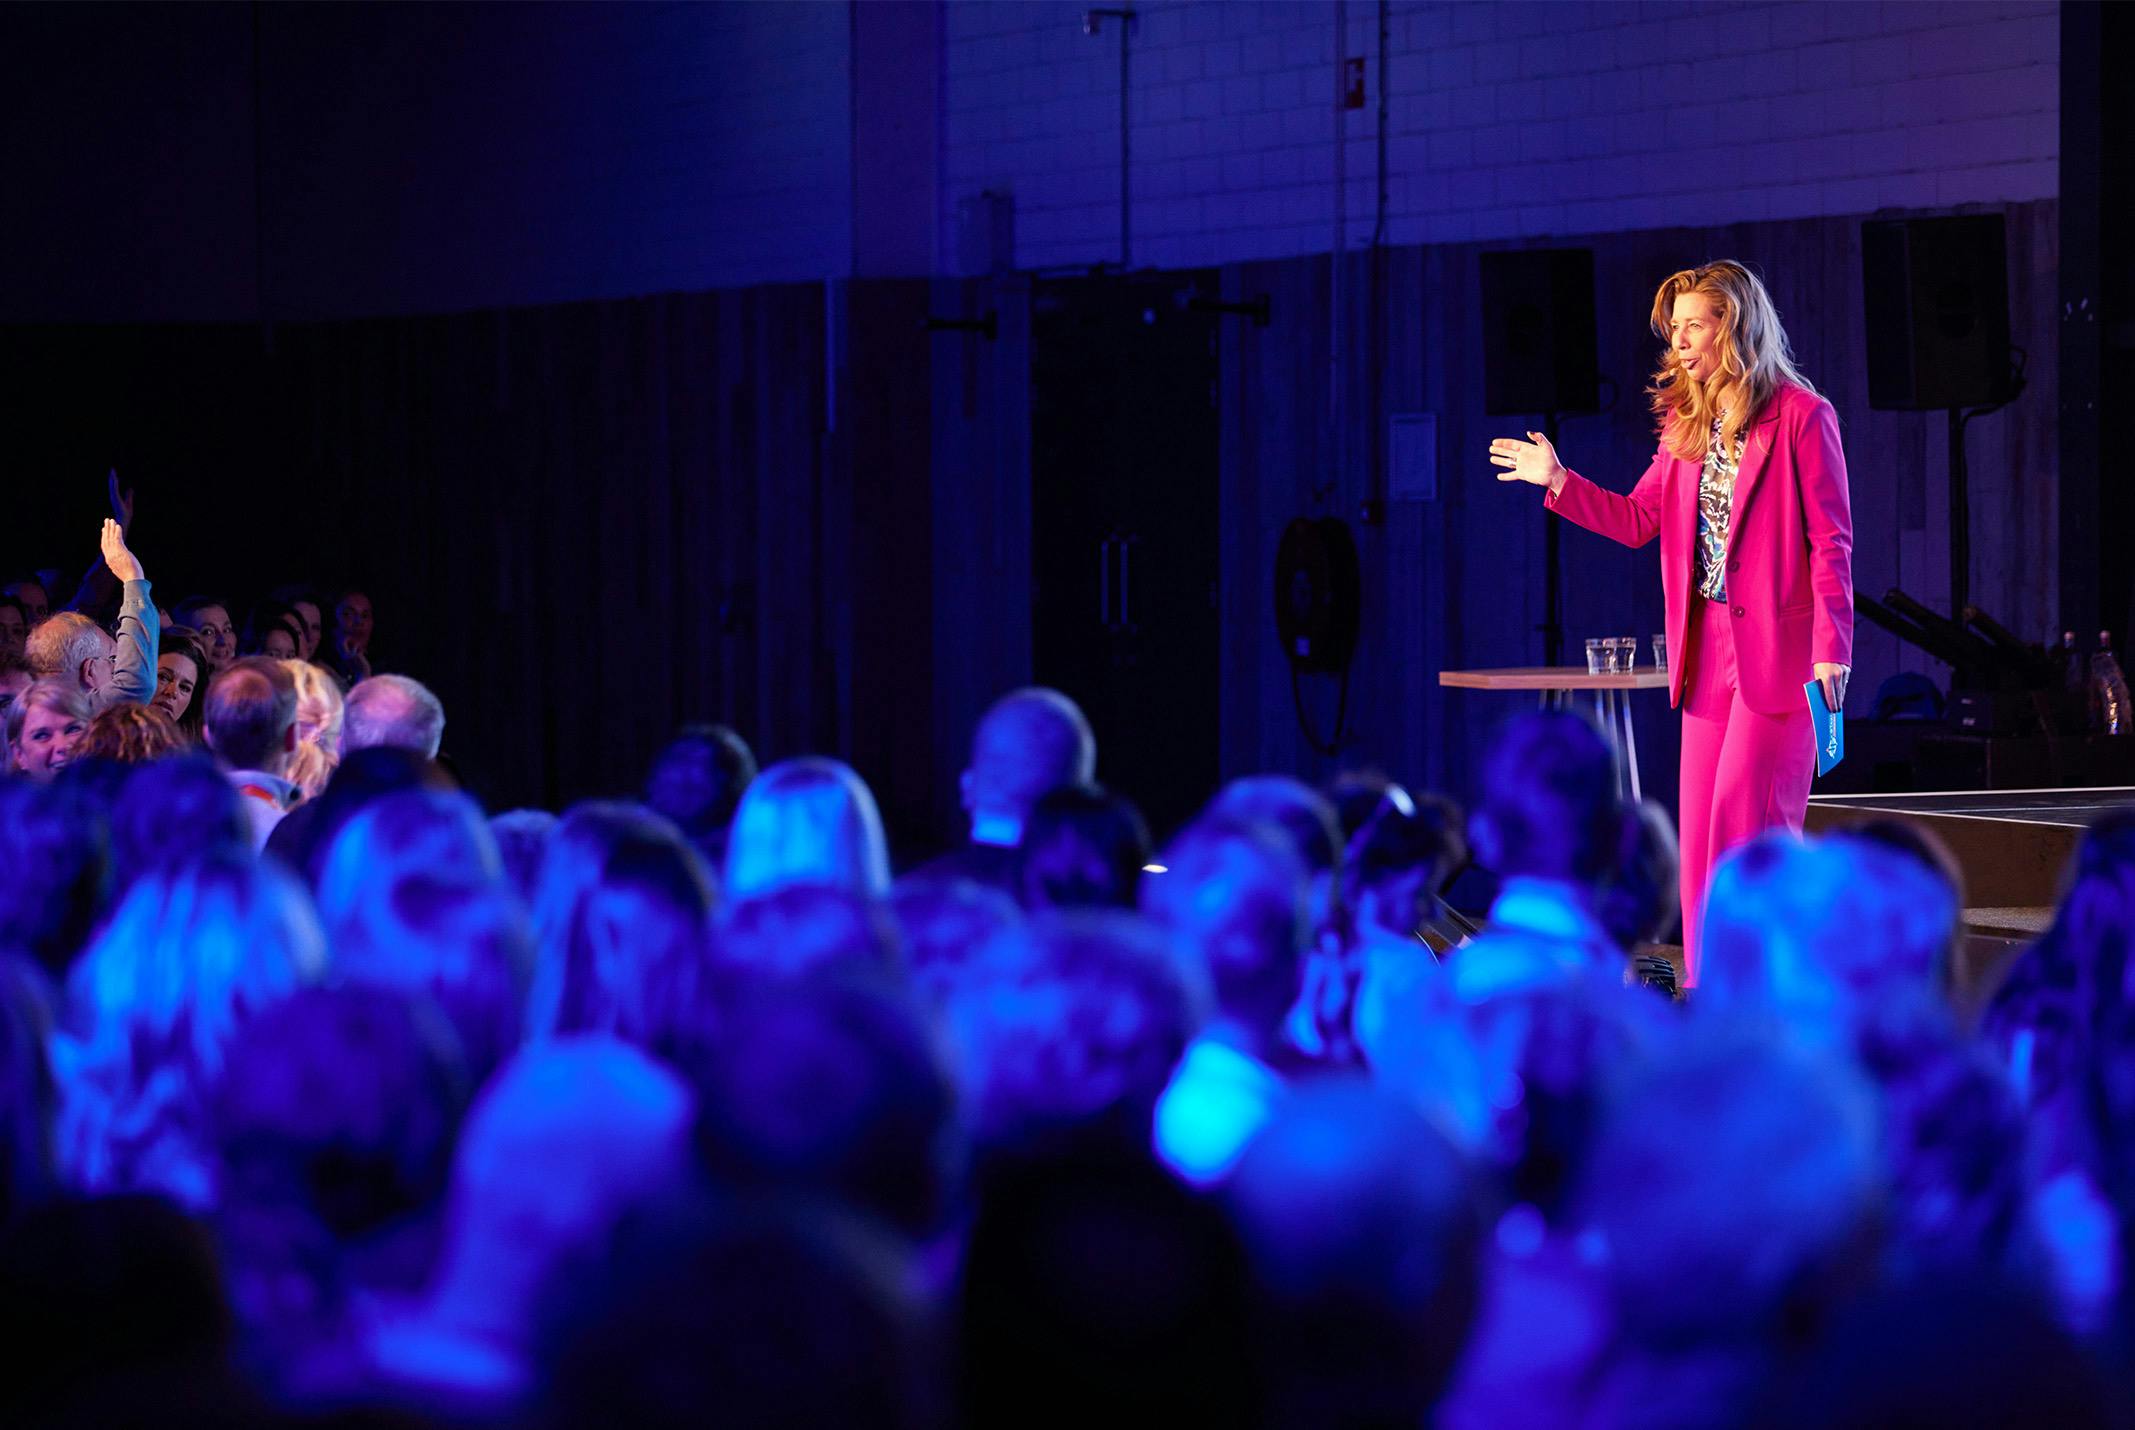 Pauline de Wilde op het podium in een roze pak tijdens een evenement sprekend naar het publiek